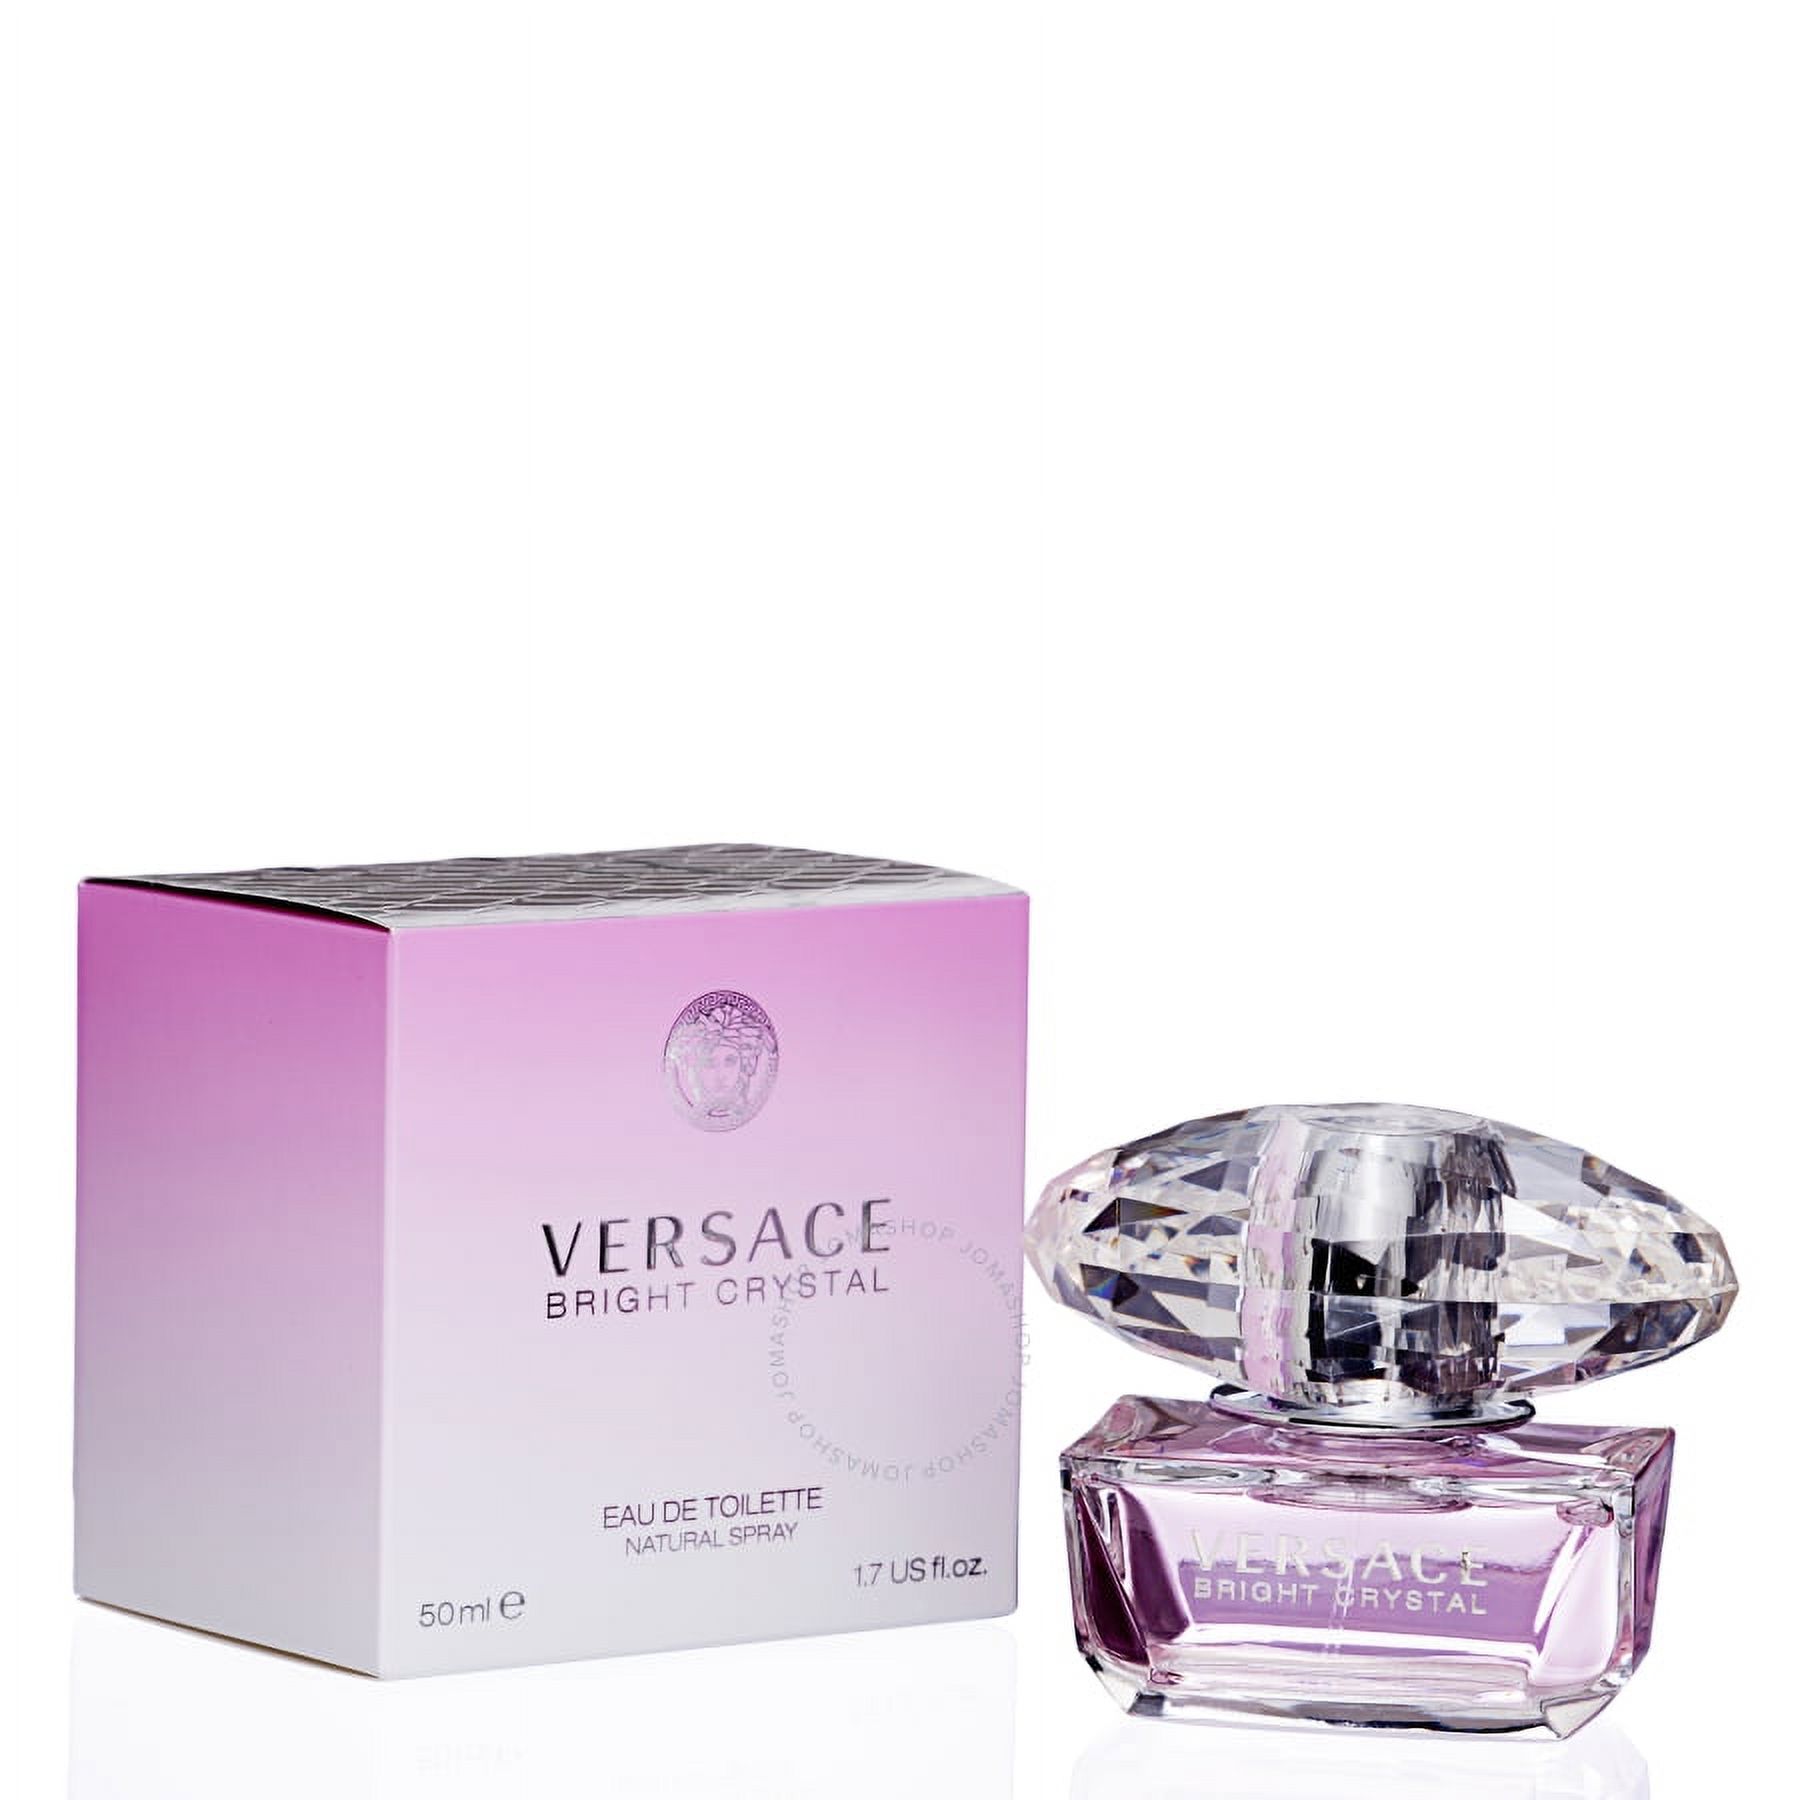 Versace Bright Crystal Eau de Toilette, Perfume for Women, 1.7 Oz - image 1 of 2